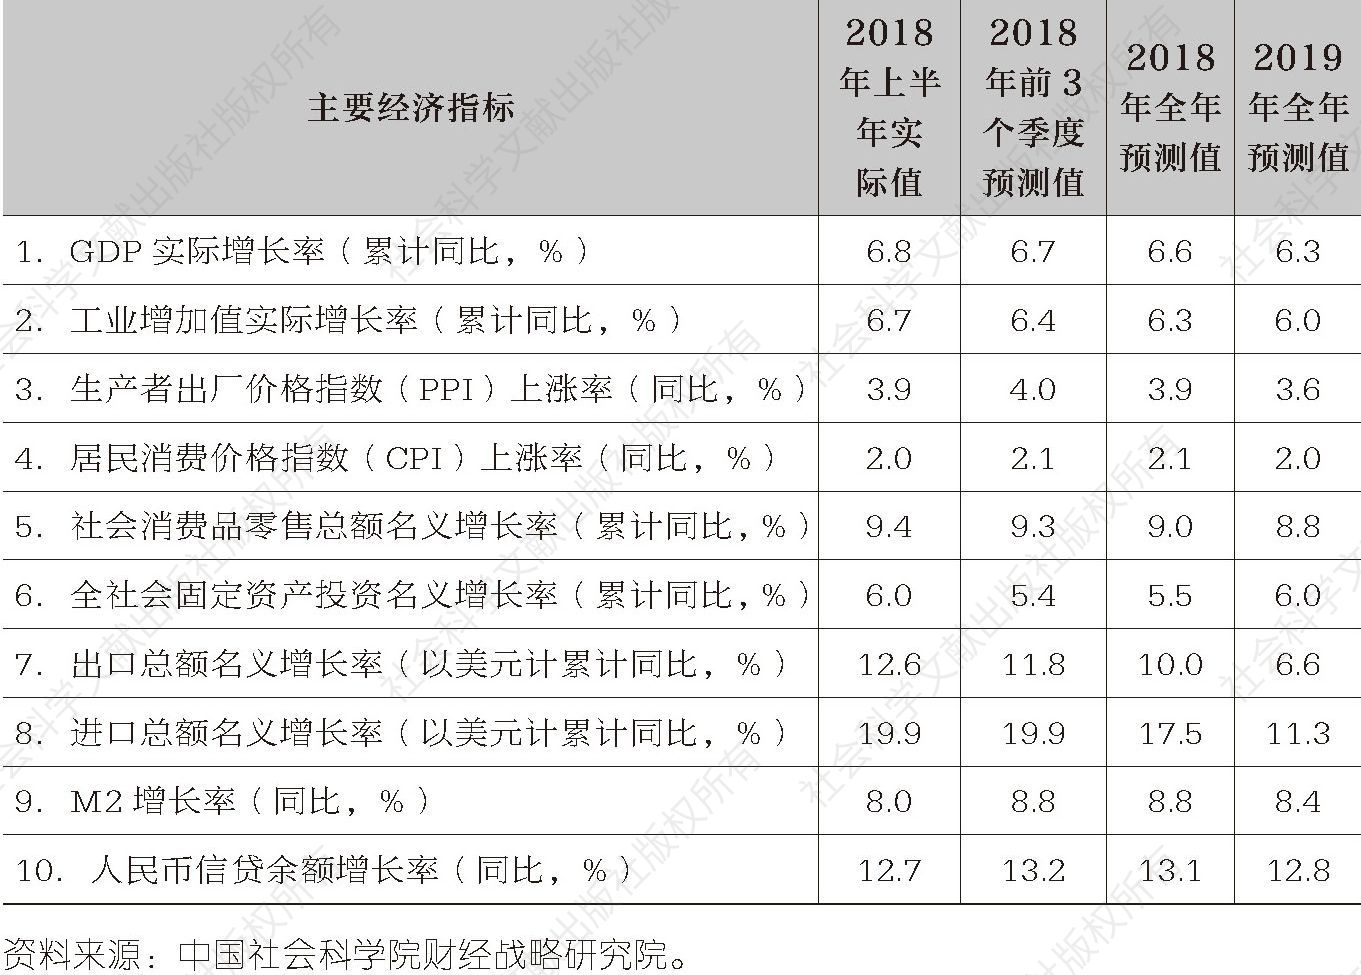 表1-1 中国主要宏观经济指标预测